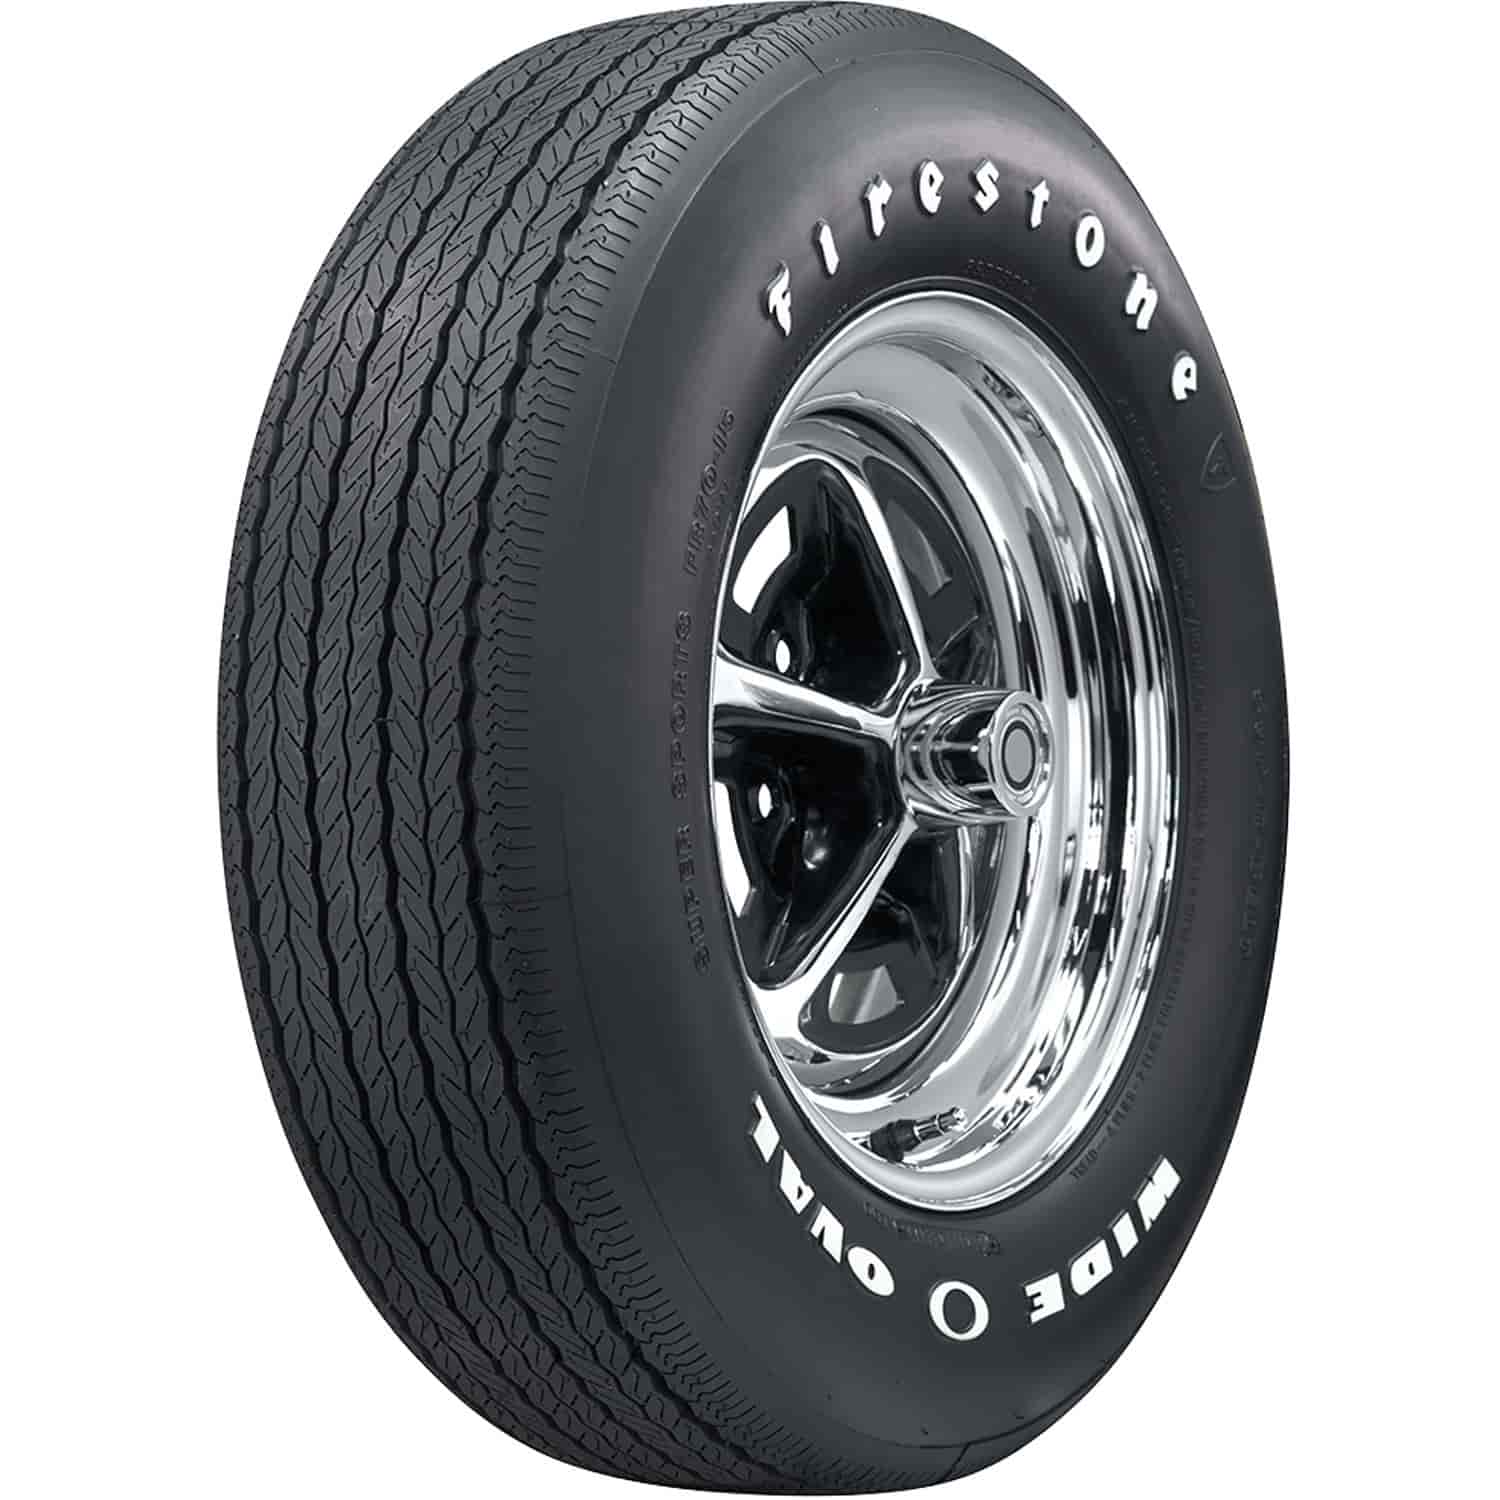 Firestone Wide Oval Radial Tire GR70-15